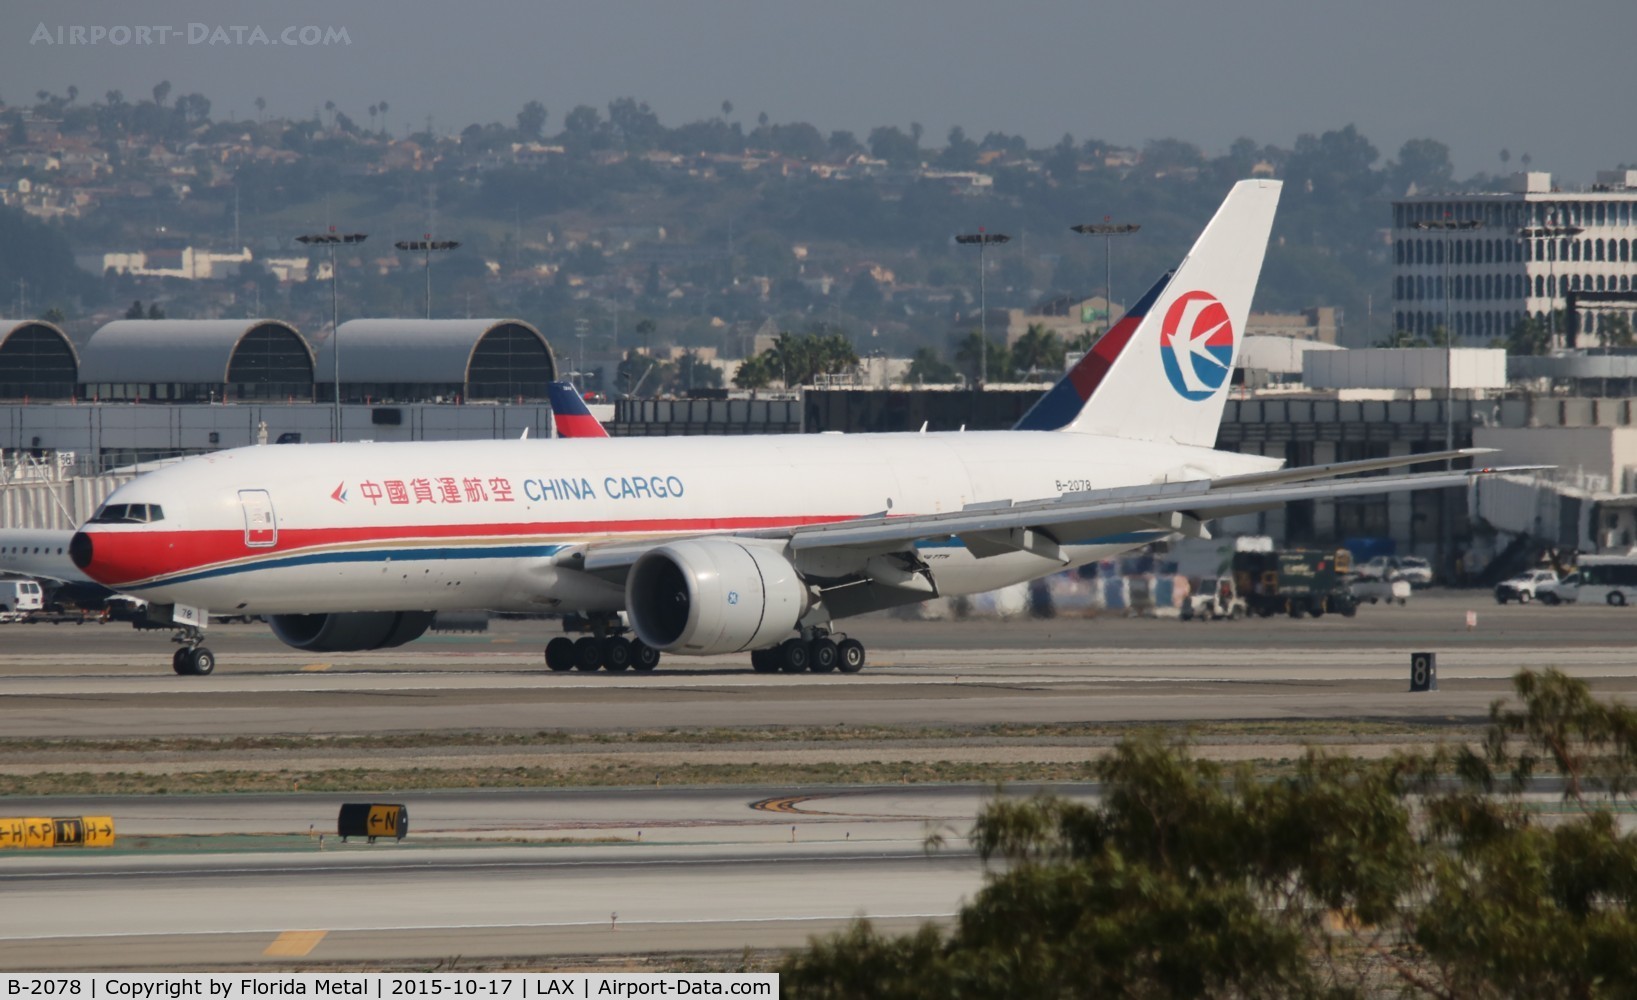 B-2078, 2010 Boeing 777-F6N C/N 37714, China Cargo